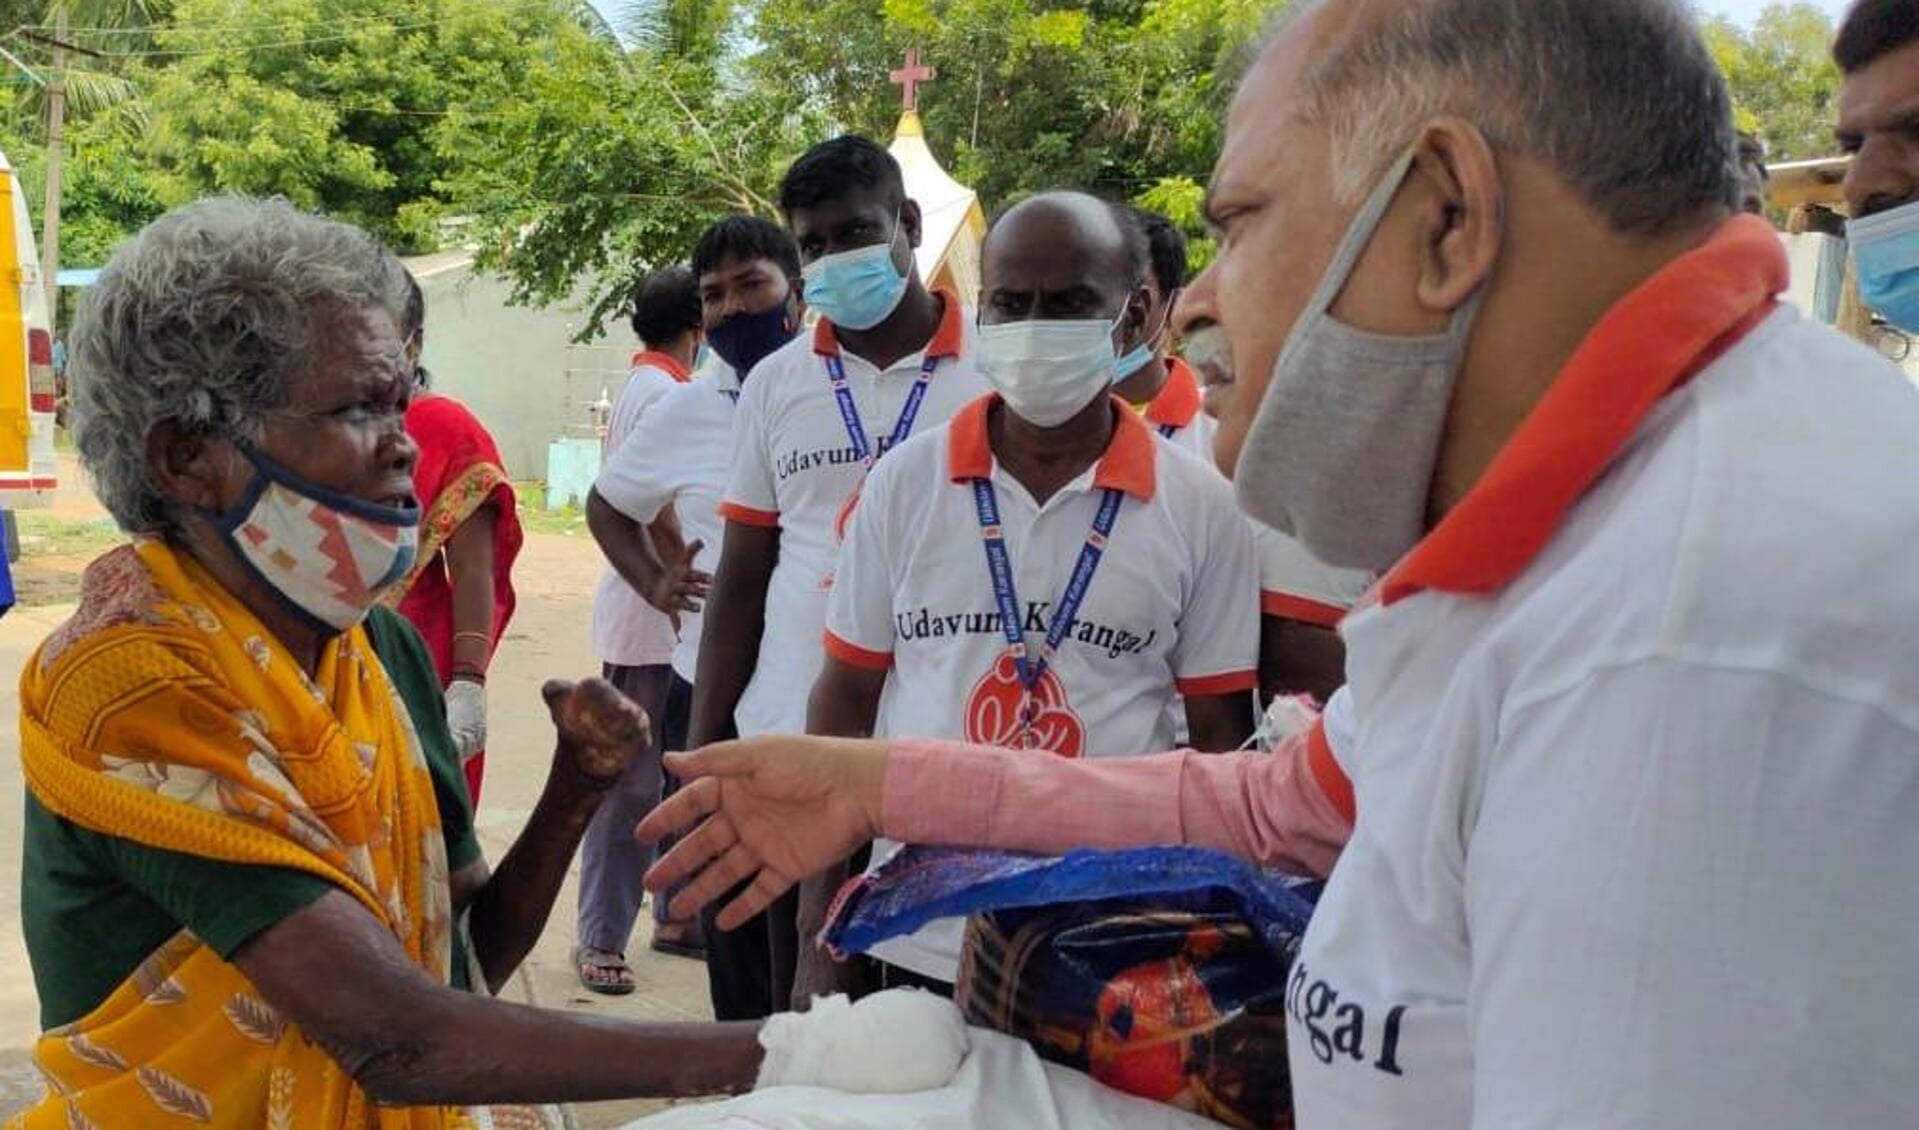 Steven Vidyaakar en zijn team zetten zich ook in voor leprapatiënten in India. 